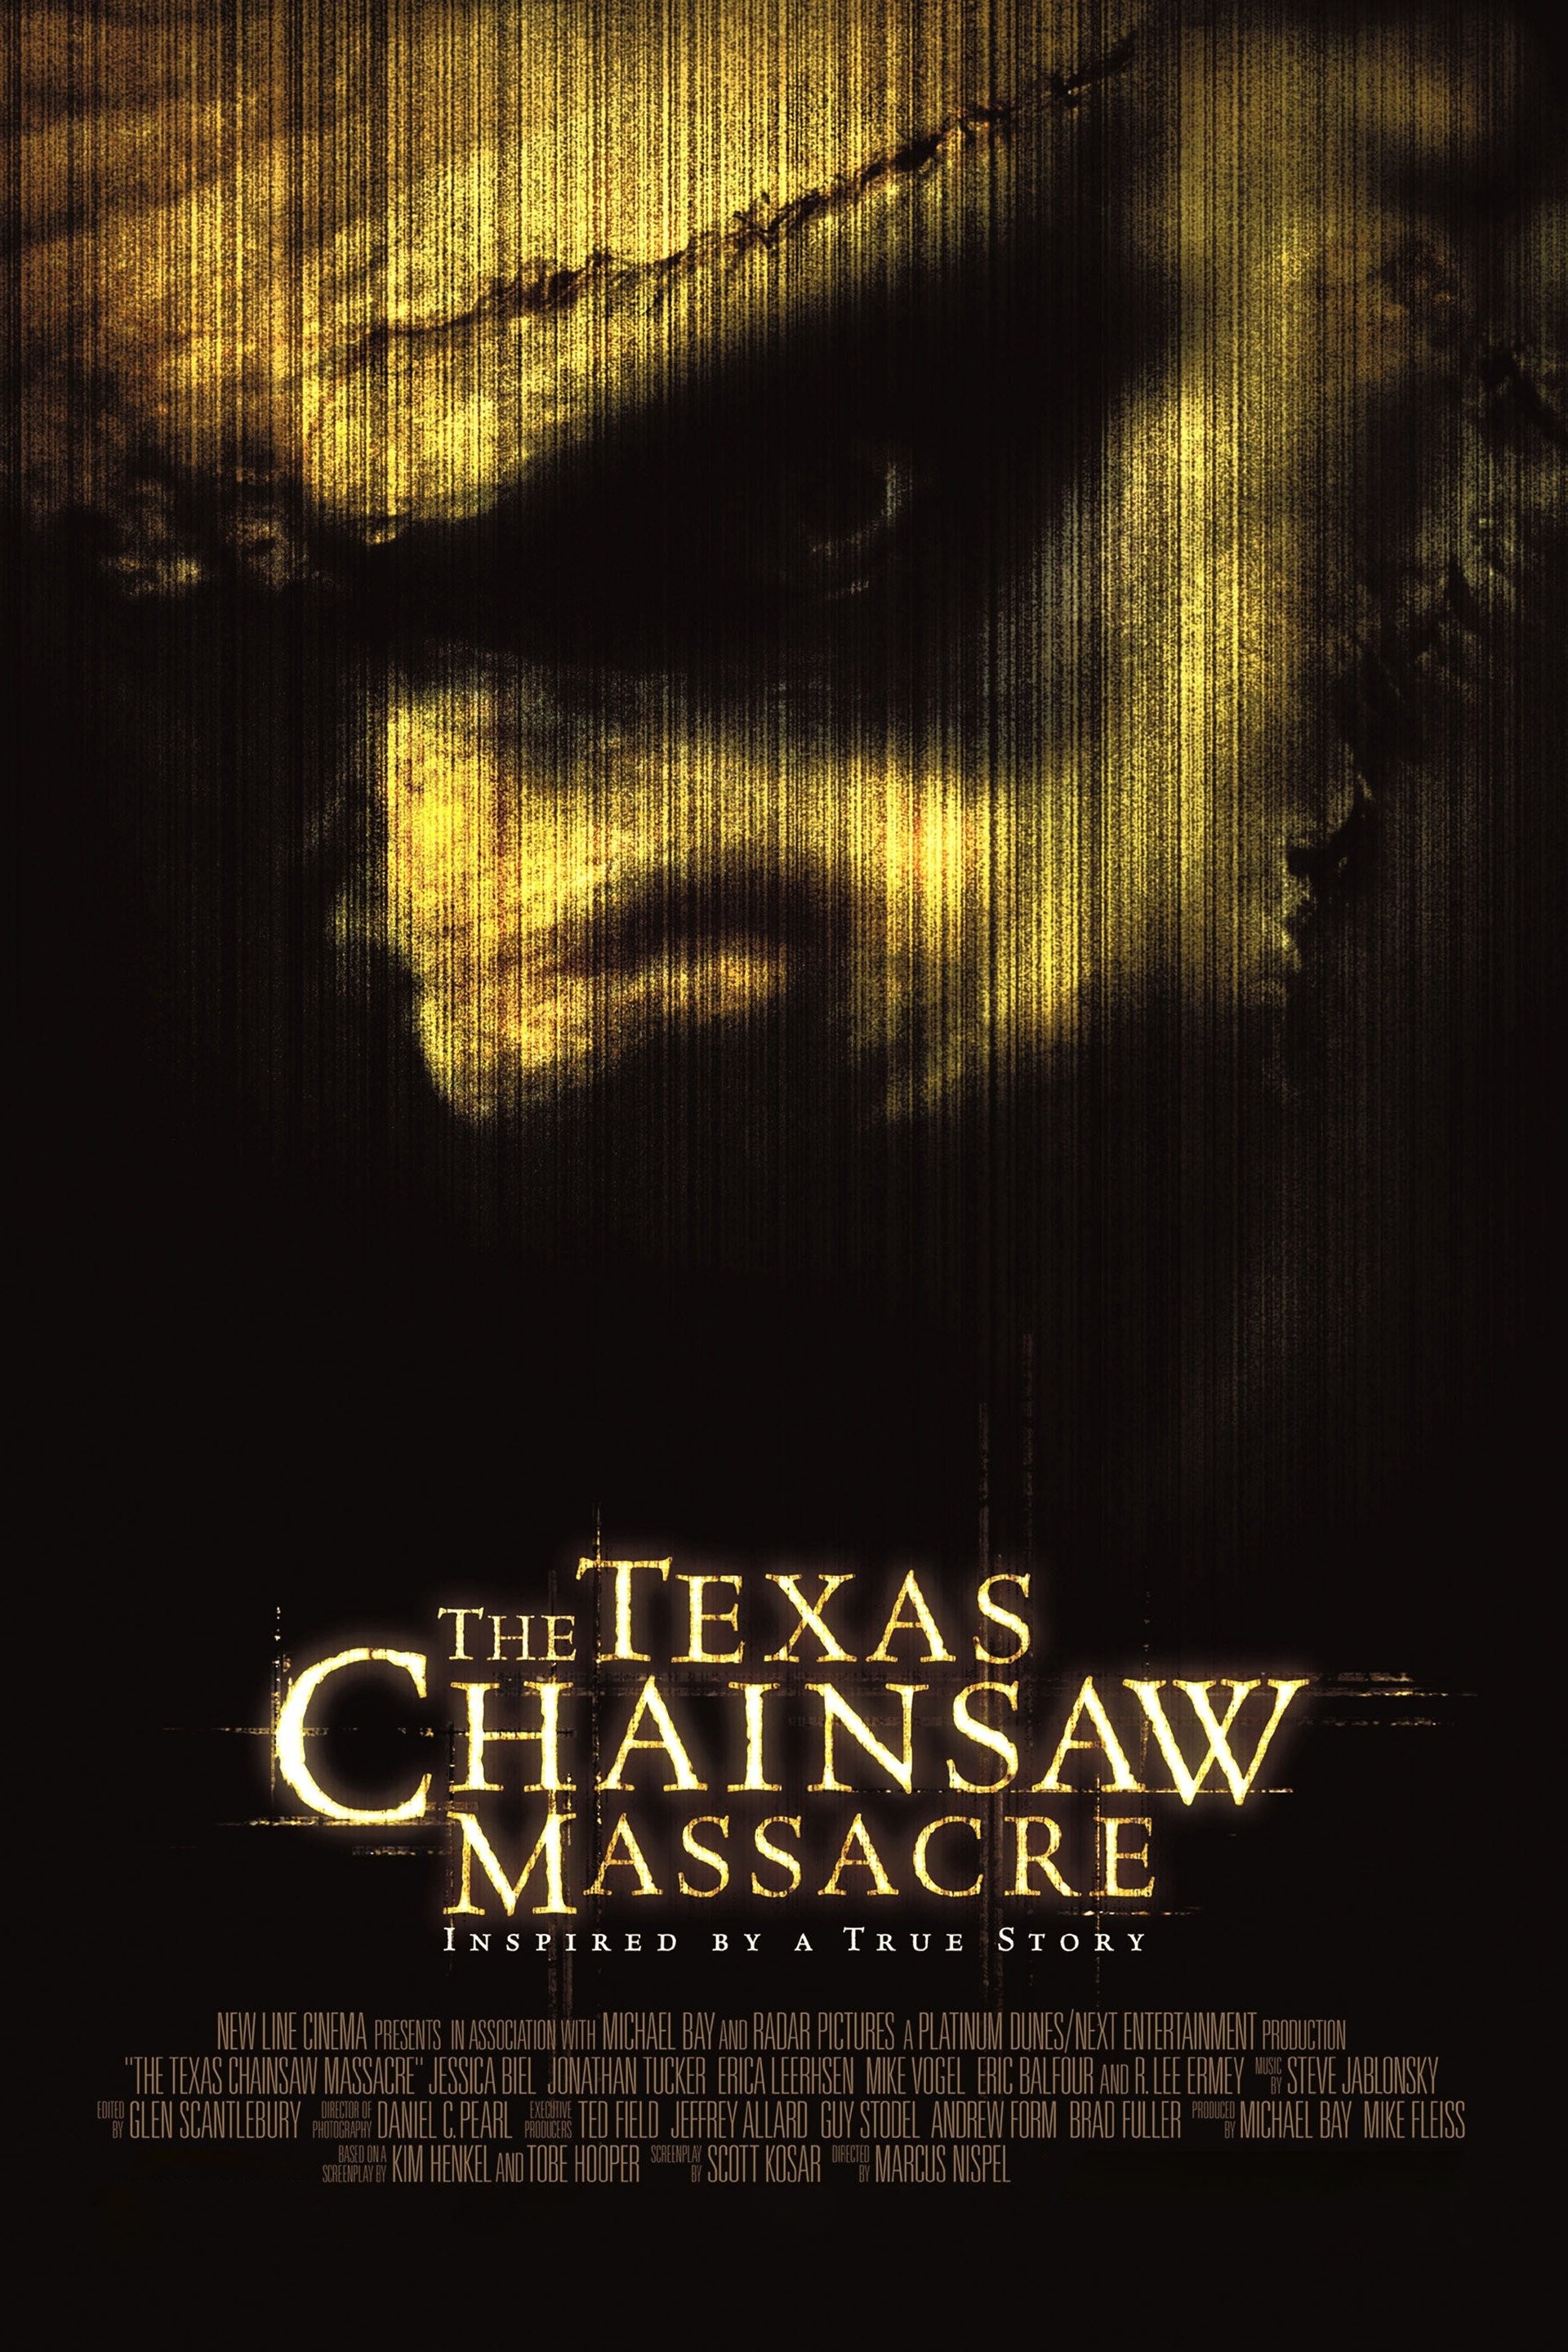 Netflix's Texas Chainsaw Massacre Sequel Earns Mixed Reviews